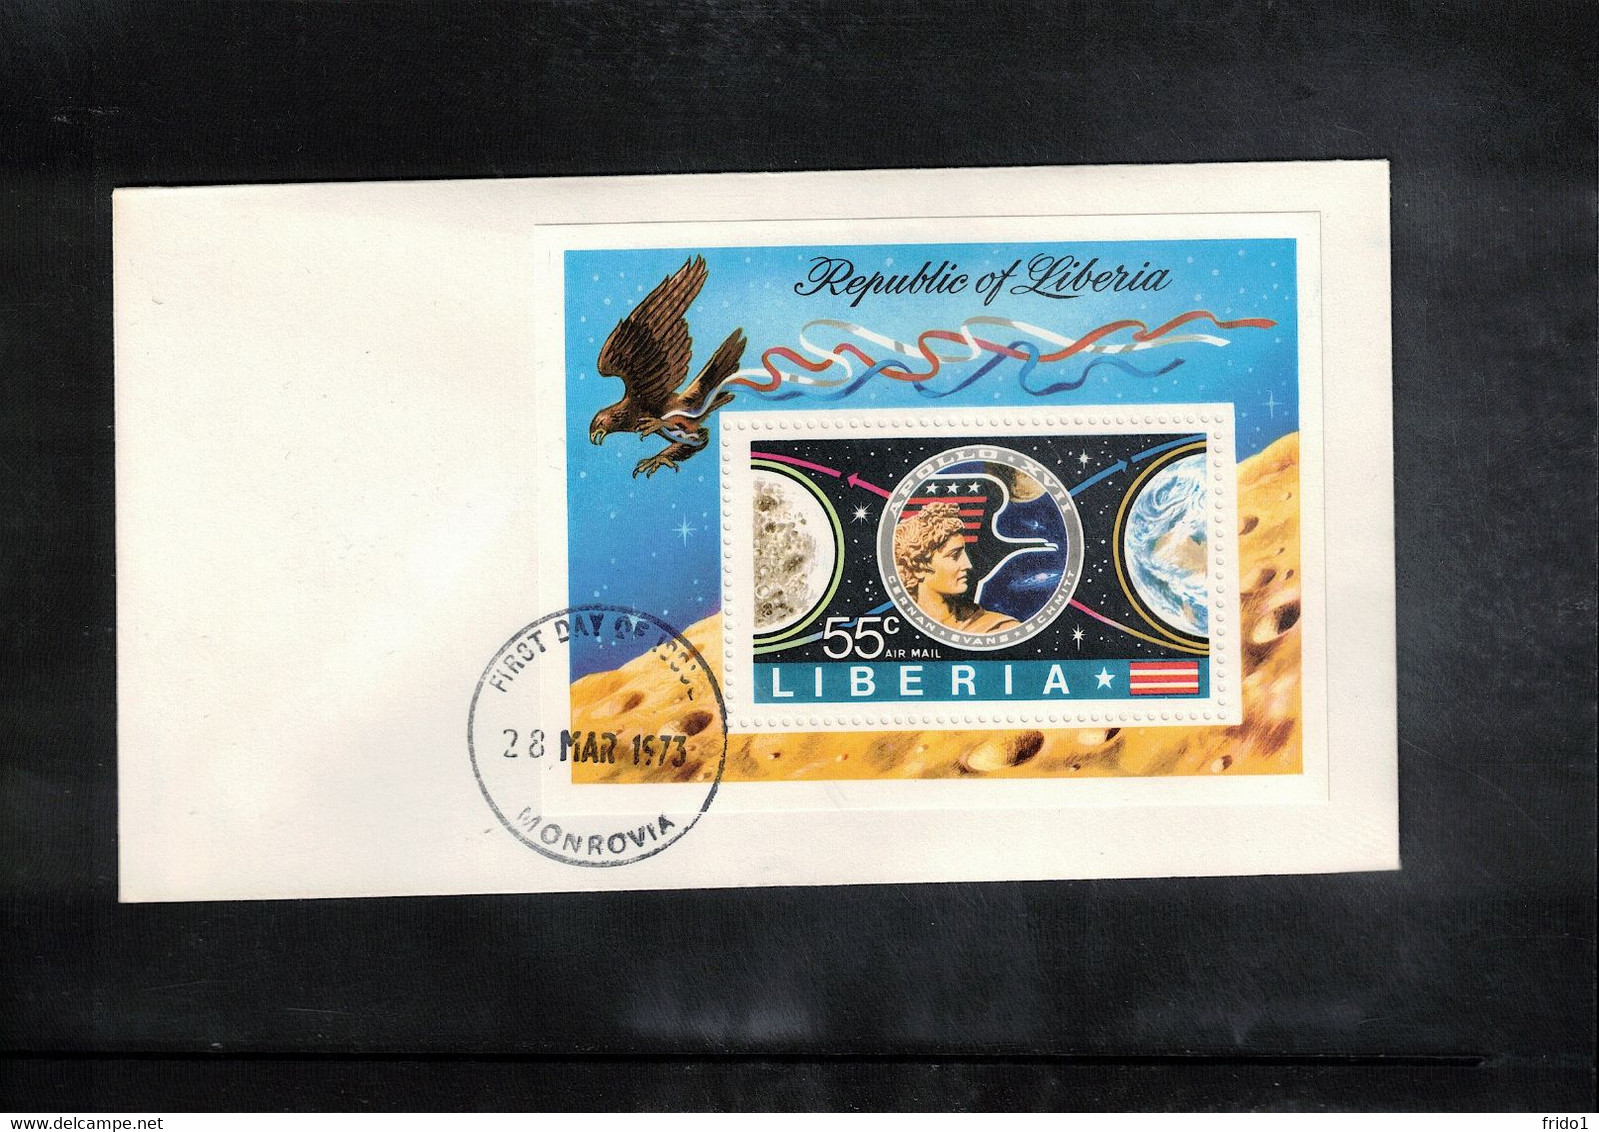 Liberia 1973 Space / Raumfahrt Apollo XVII Block FDC - Afrika